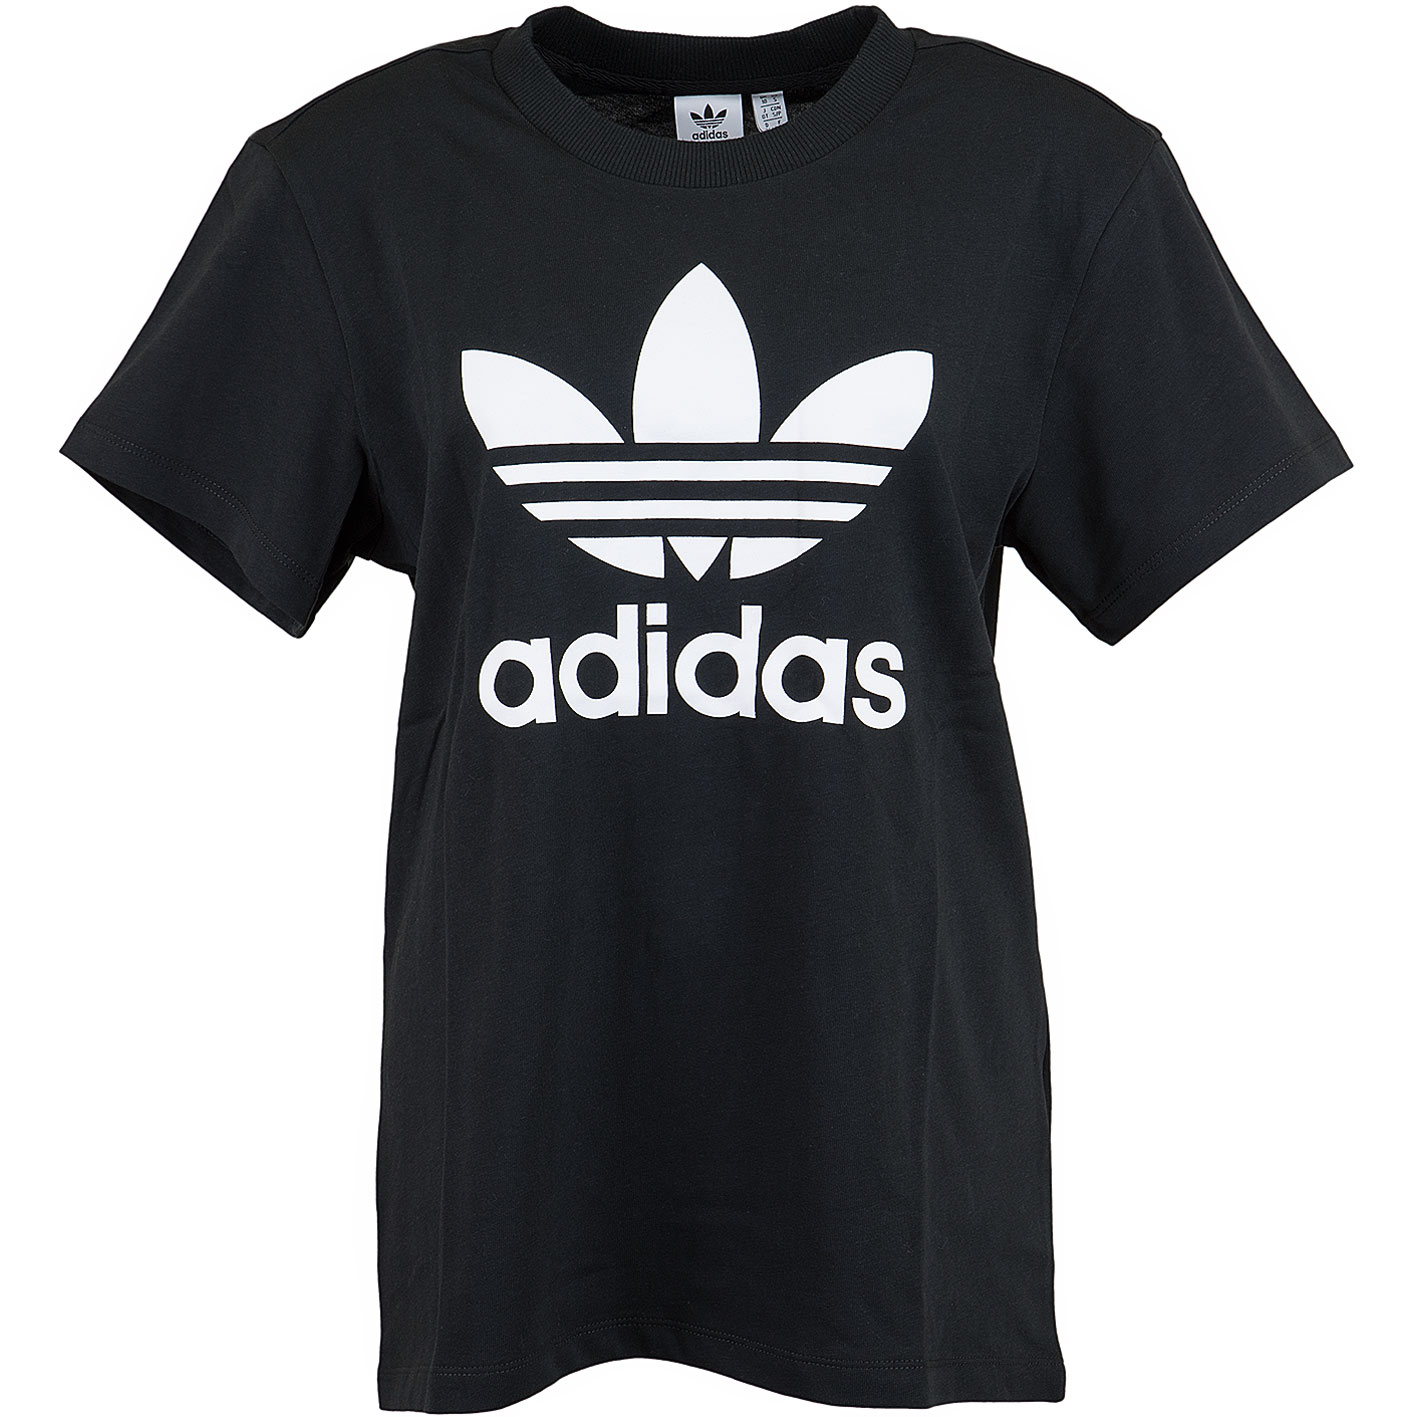 ☆ Adidas Originals Damen T-Shirt Boyfriend schwarz - hier bestellen!